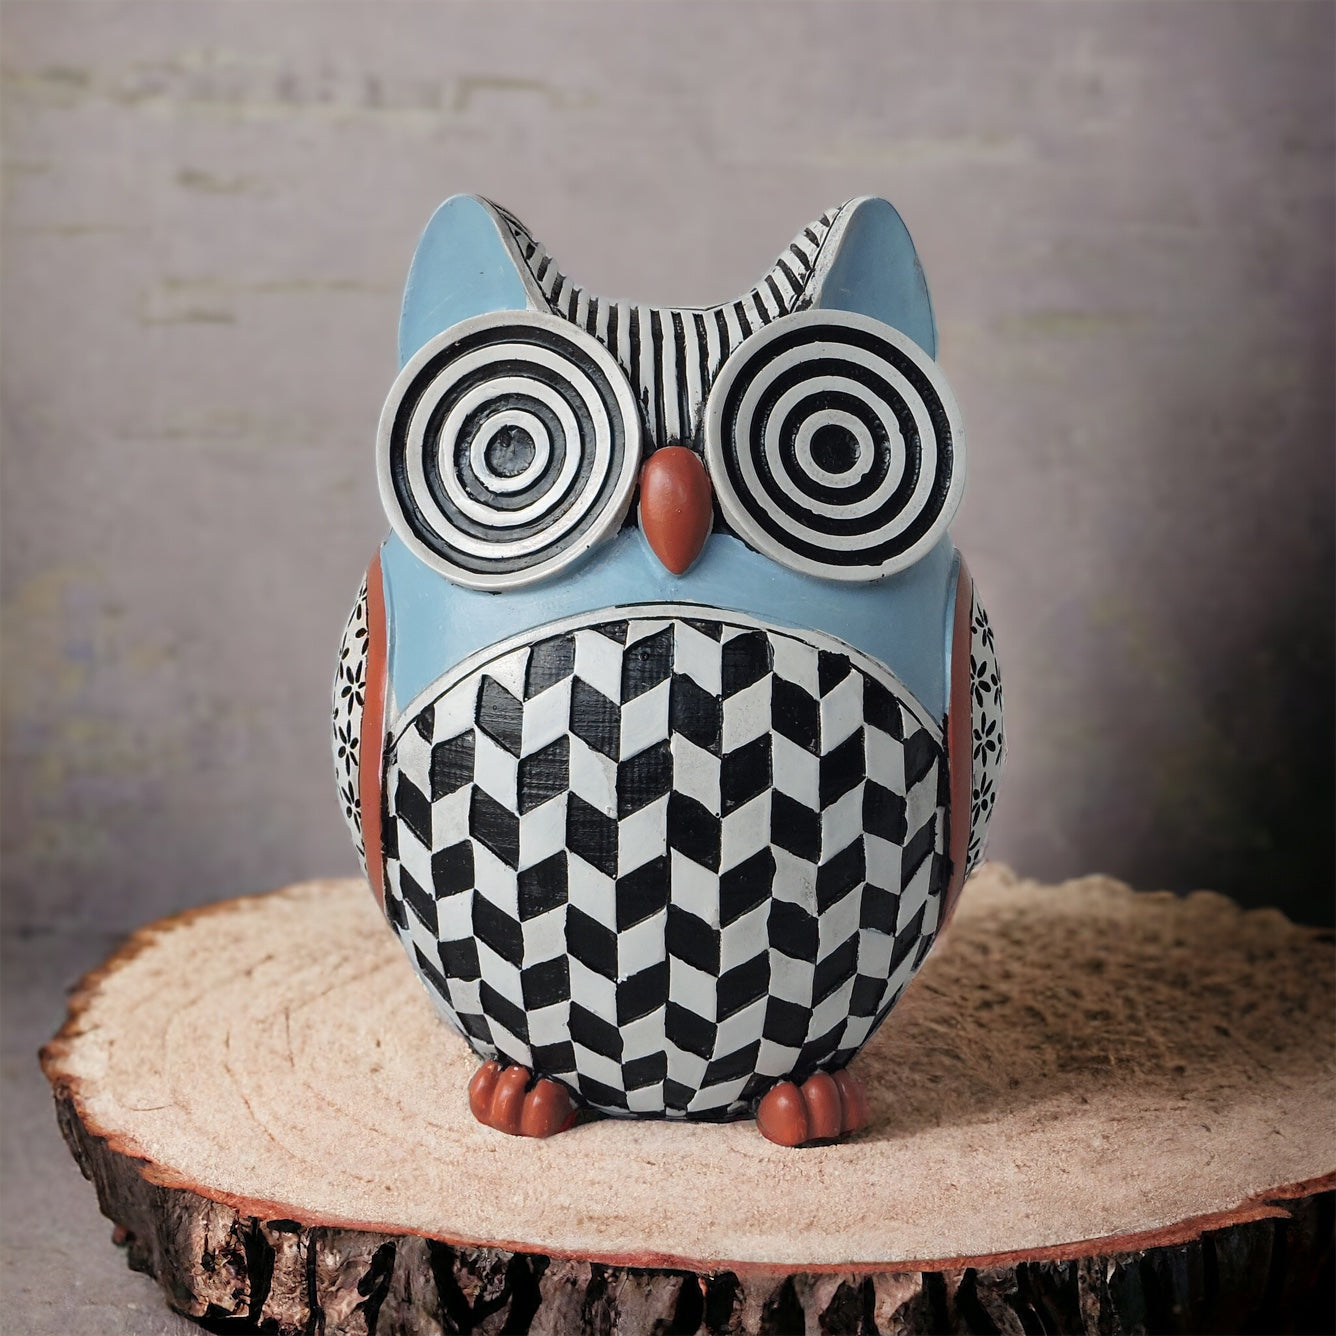 Owl With Circular Eye - B by Satgurus